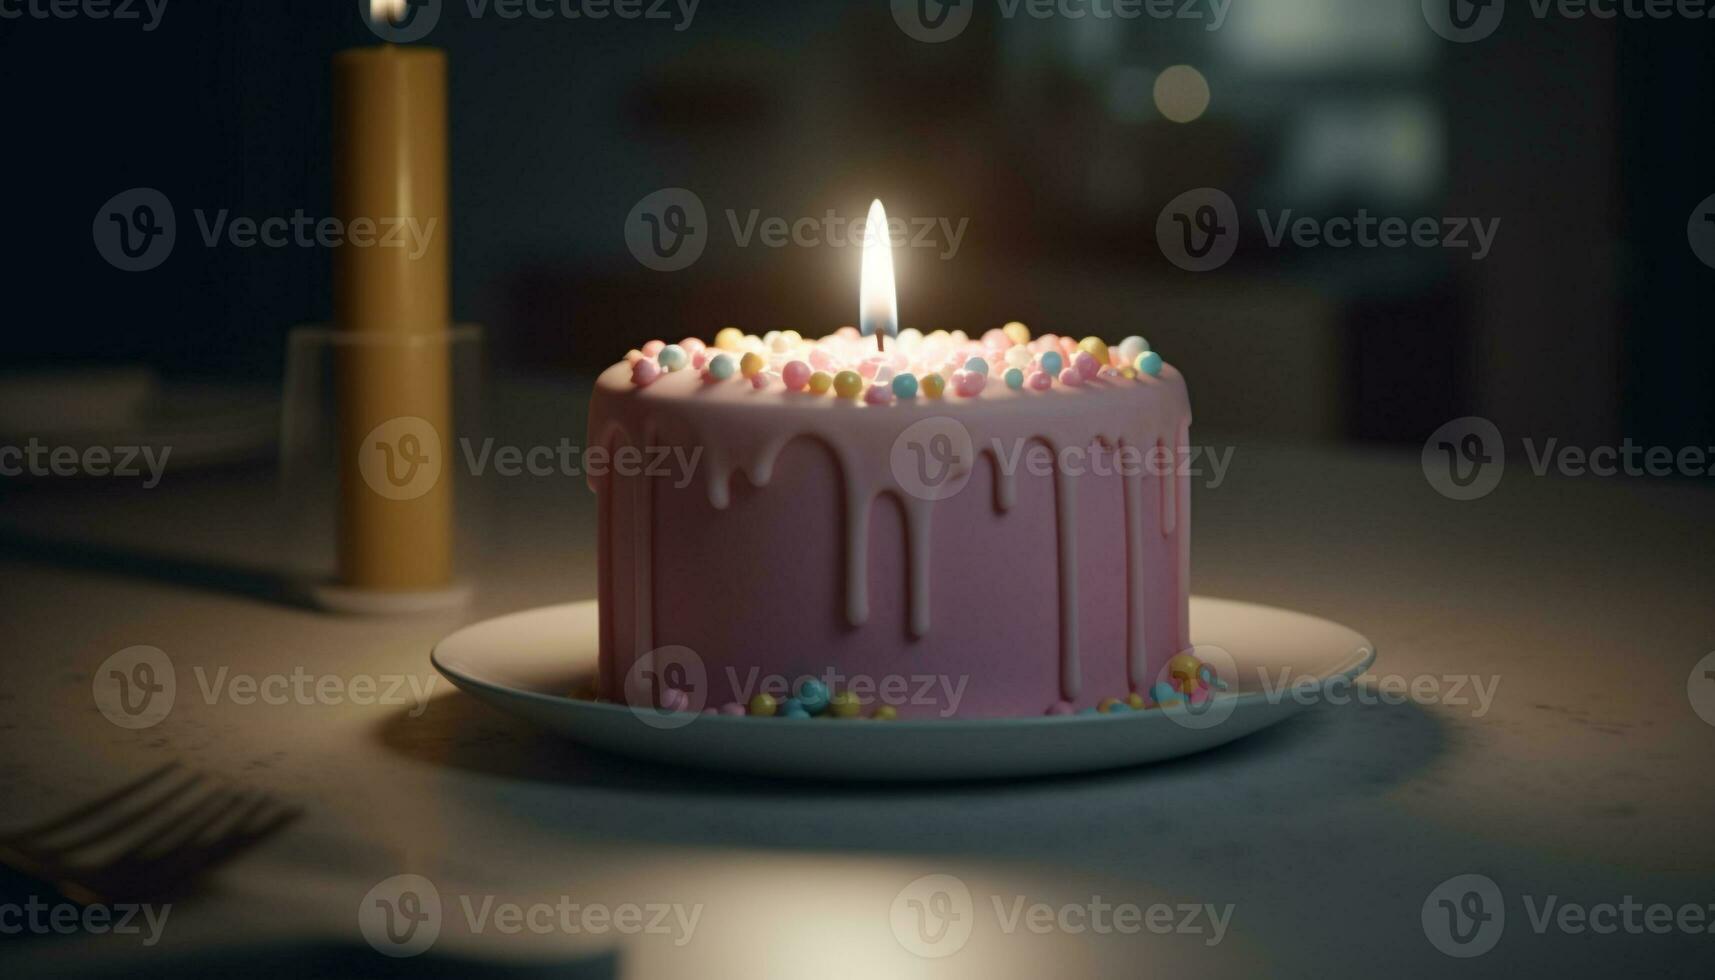 Burning candles illuminate sweet birthday indulgence indoors generated by AI photo